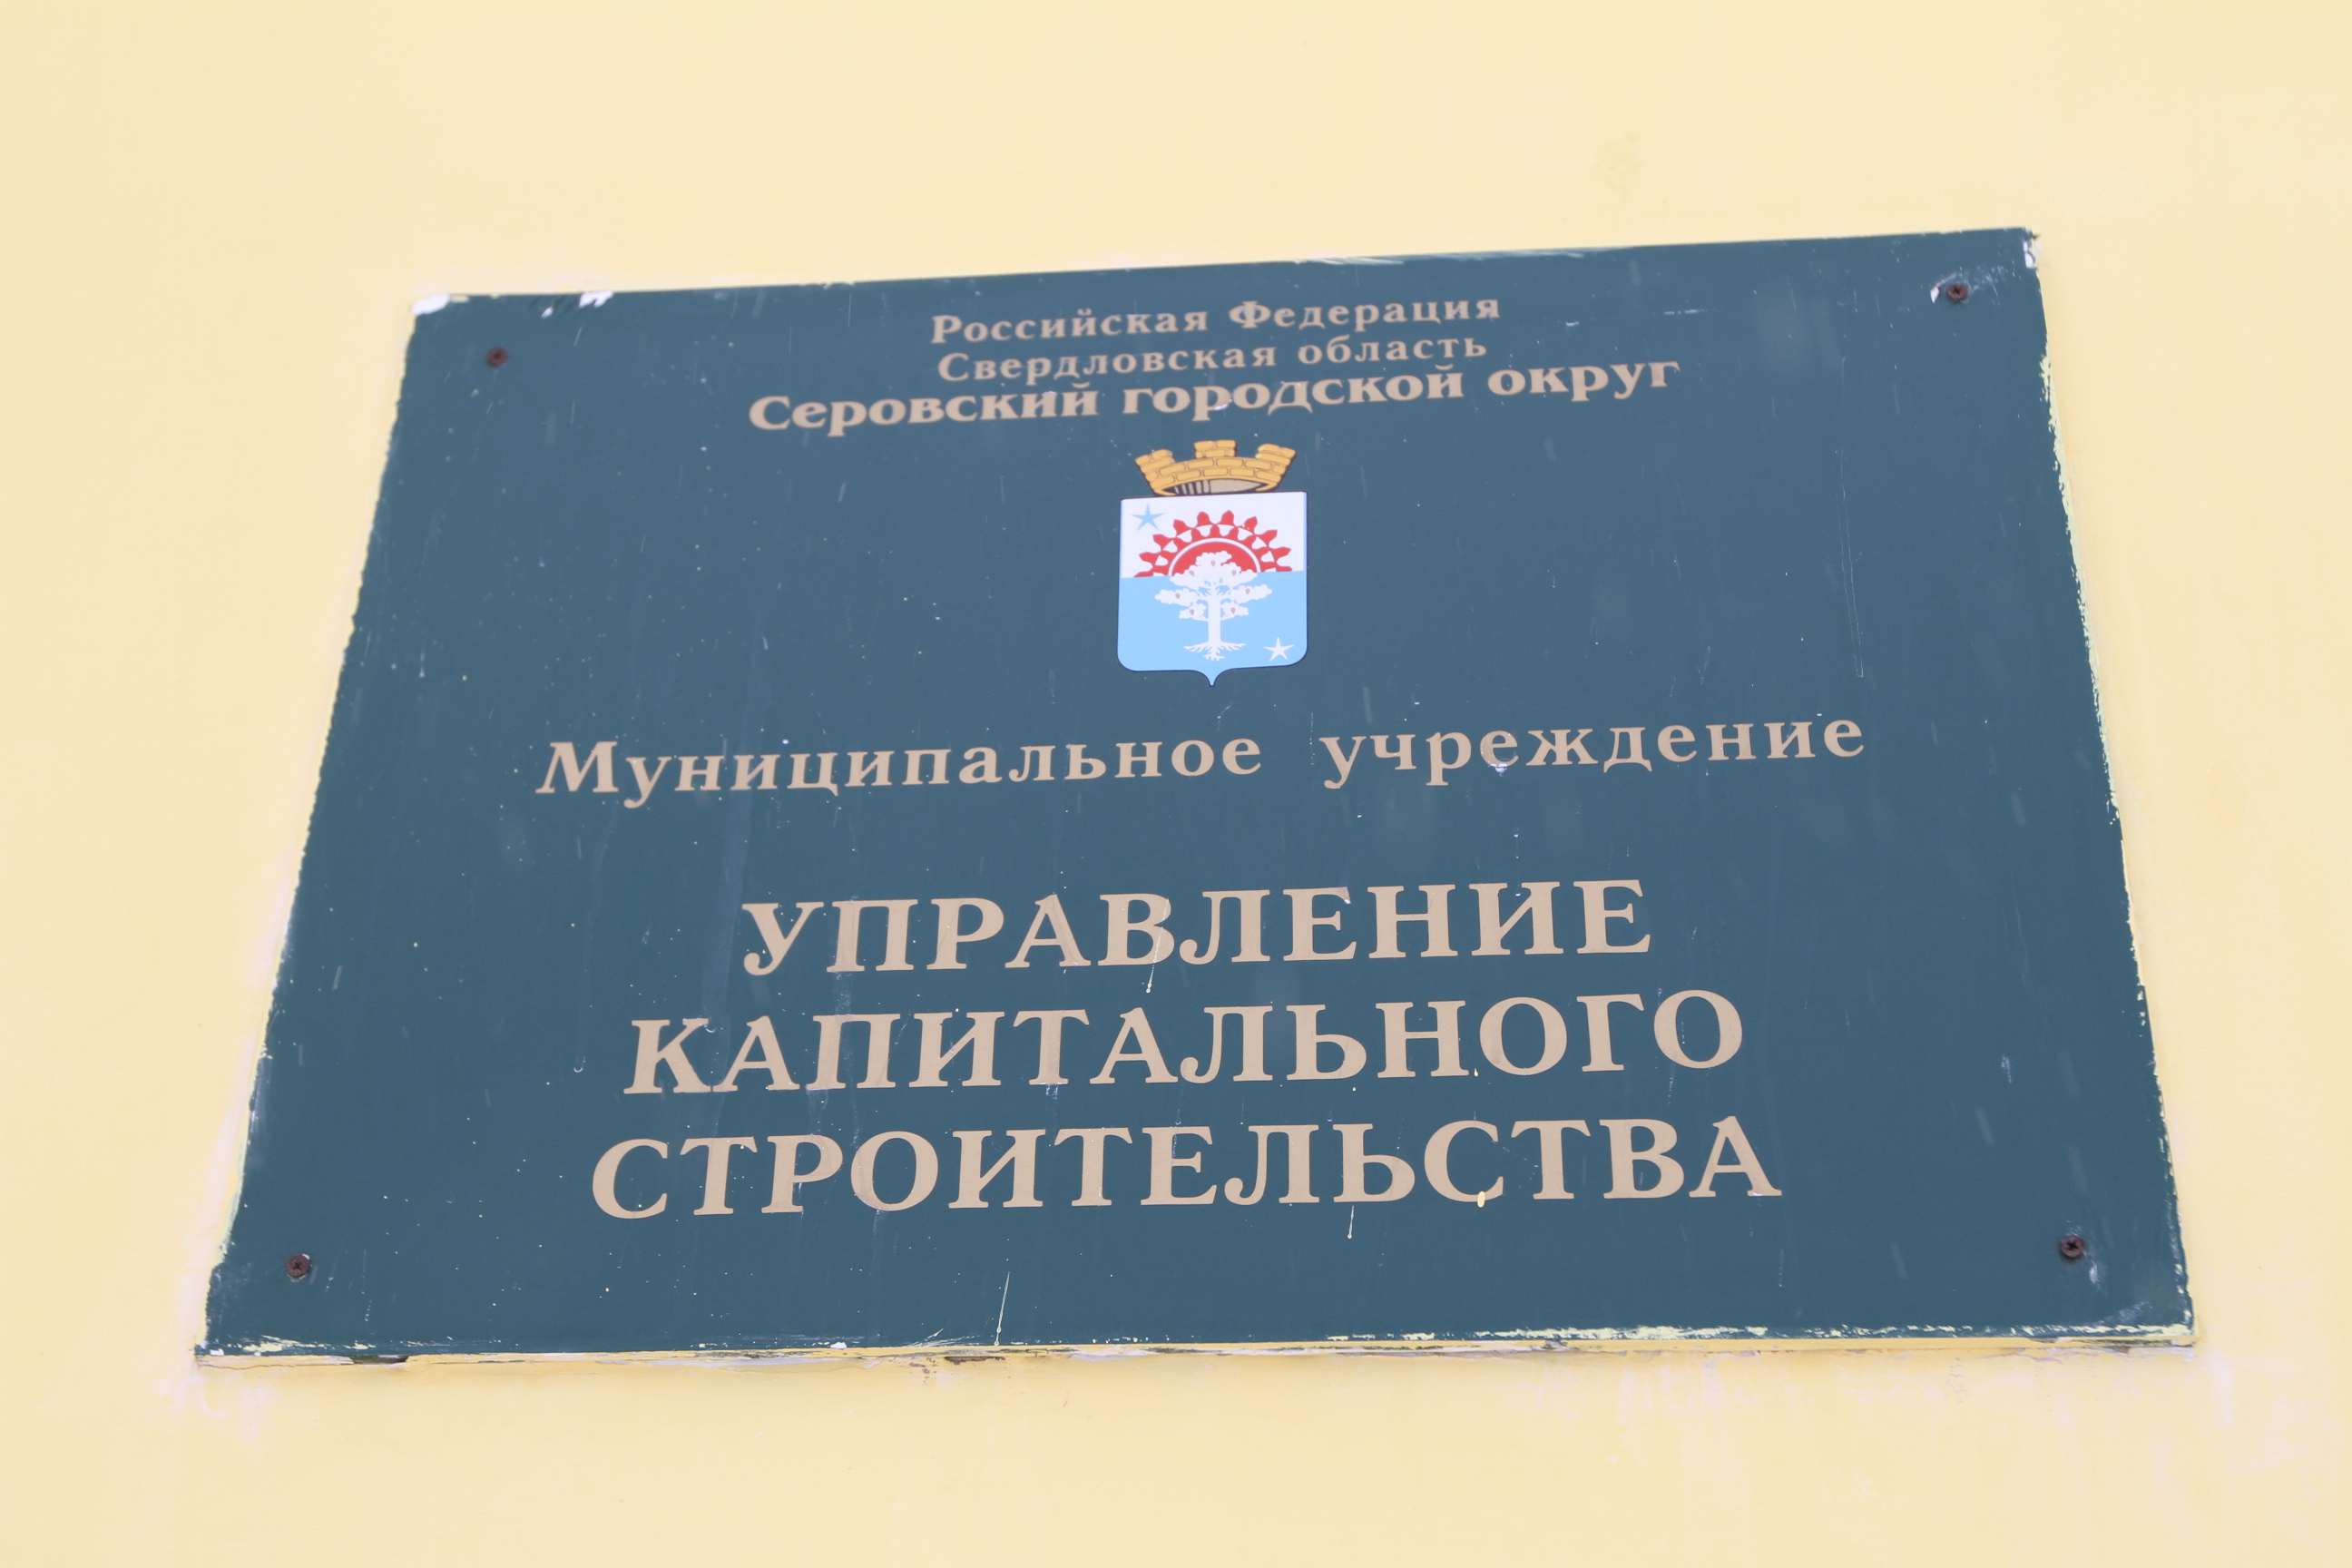 Фирма из Перми пожаловалась в ФАС на Управление капитального строительства Серова